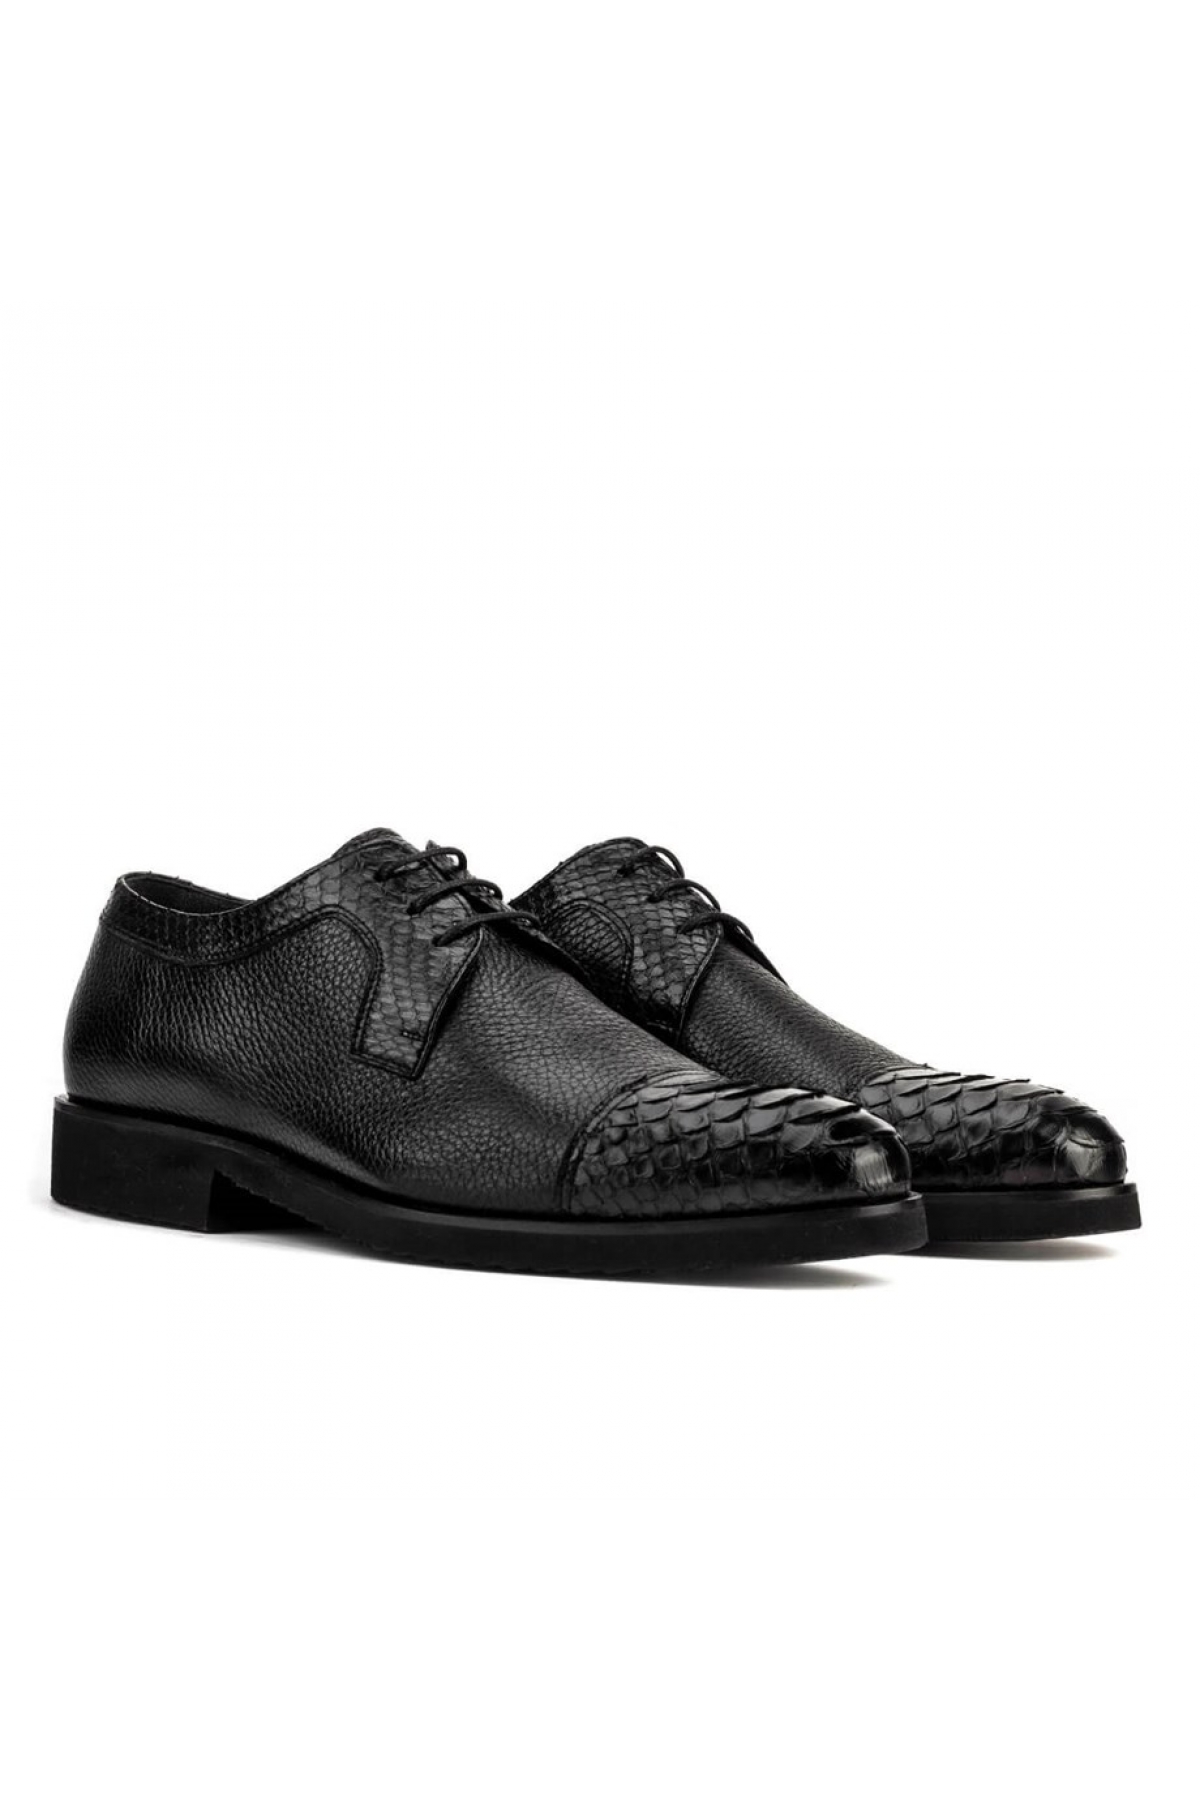 Flo Hakiki Deri Siyah Bağcıklı Erkek Klasik Ayakkabı. 5